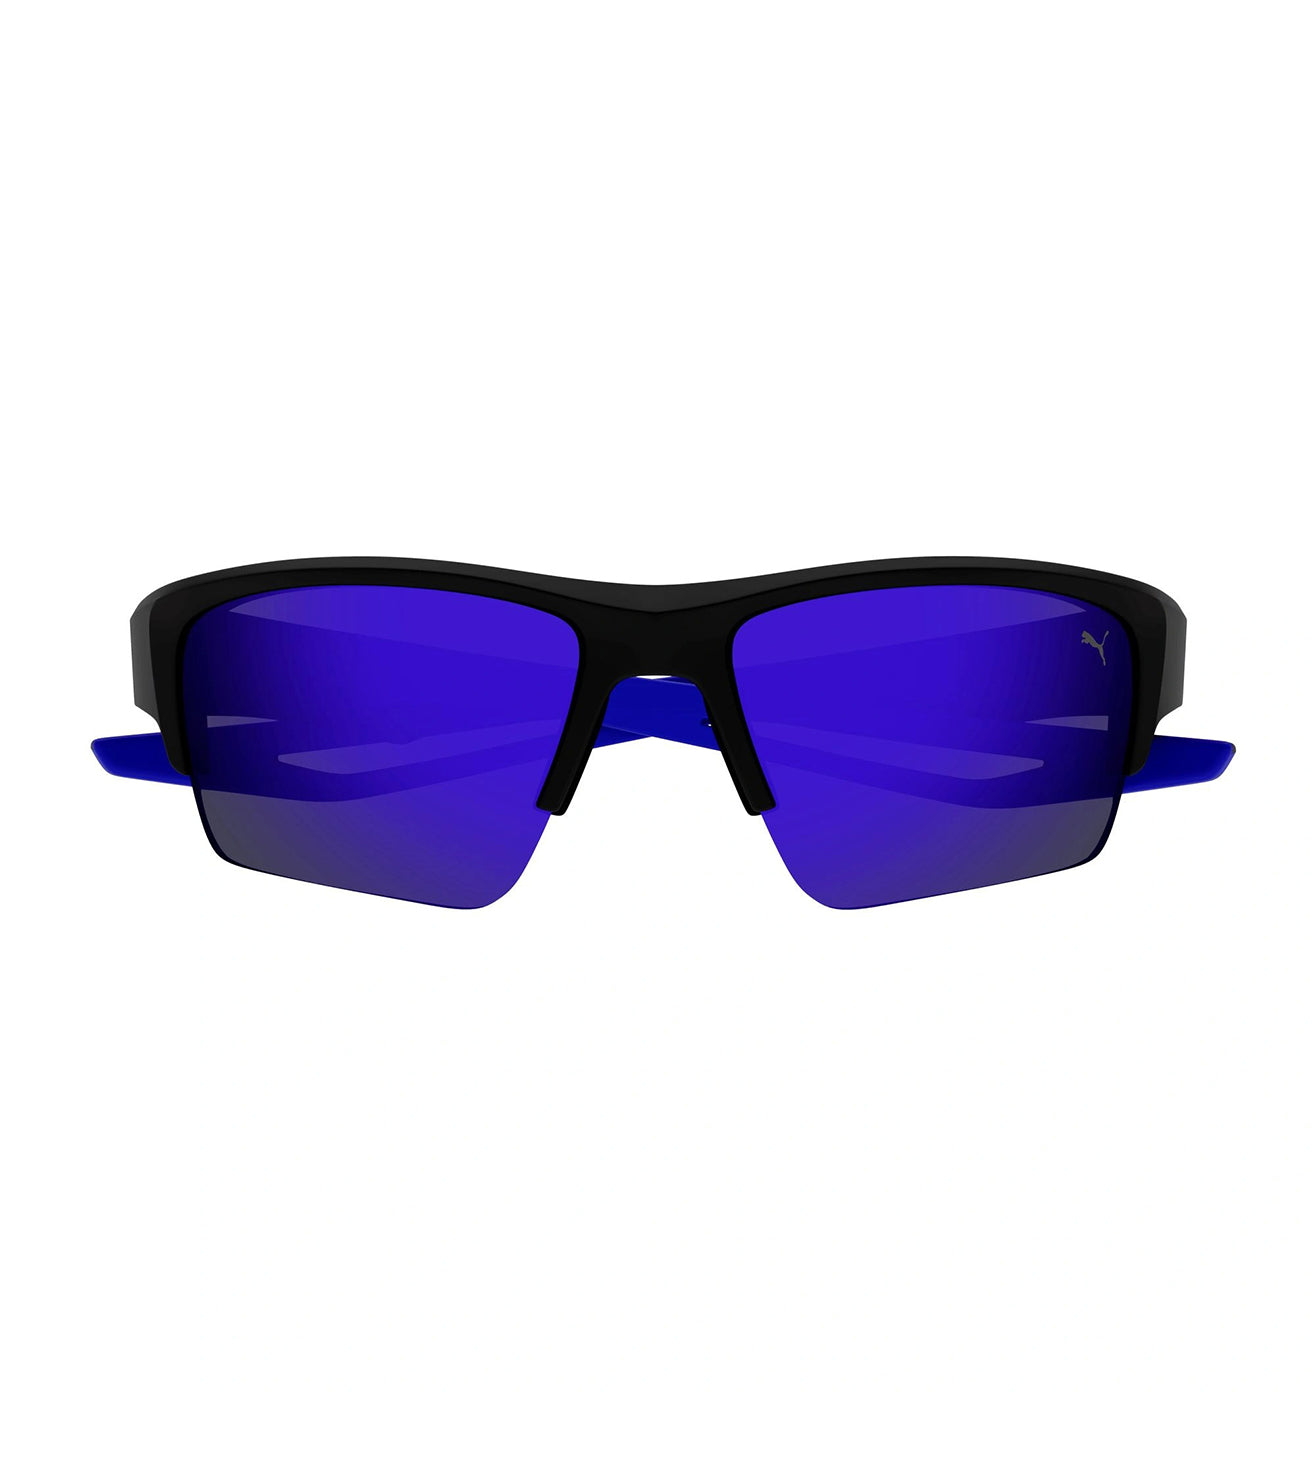 Puma Men's Blue Wrap Around Sunglasses